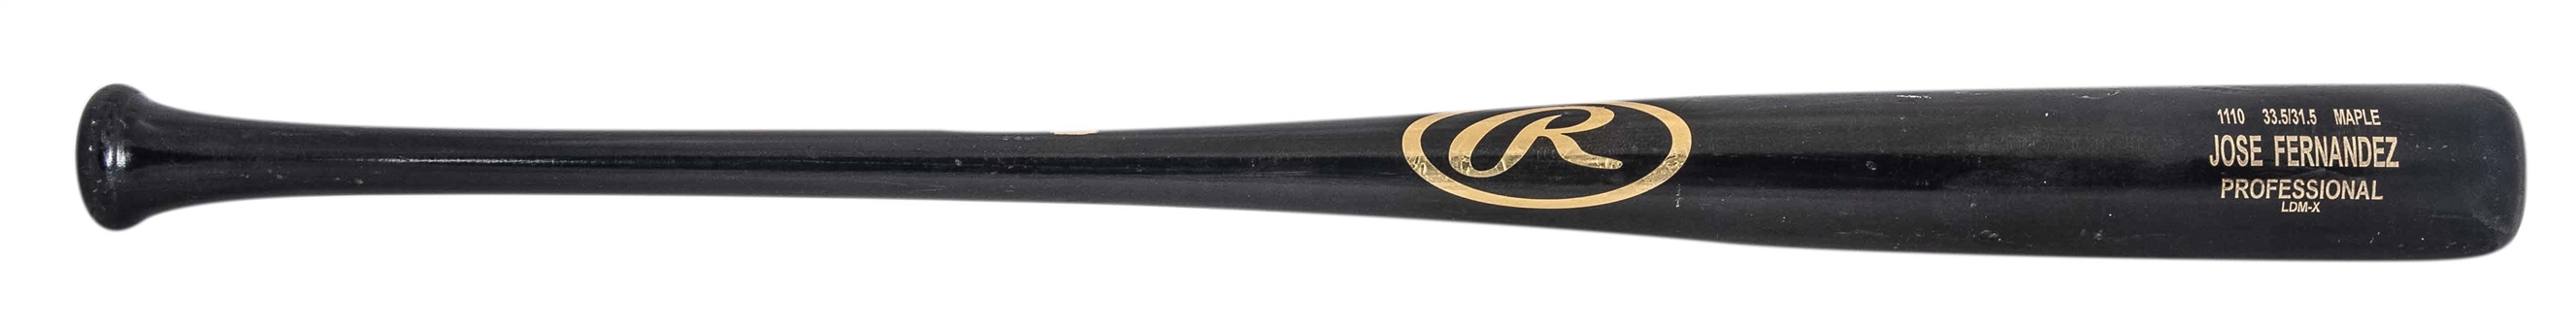 2014 Jose Fernandez Game Used Rawlings 1110 Model Bat (PSA/DNA GU 10)